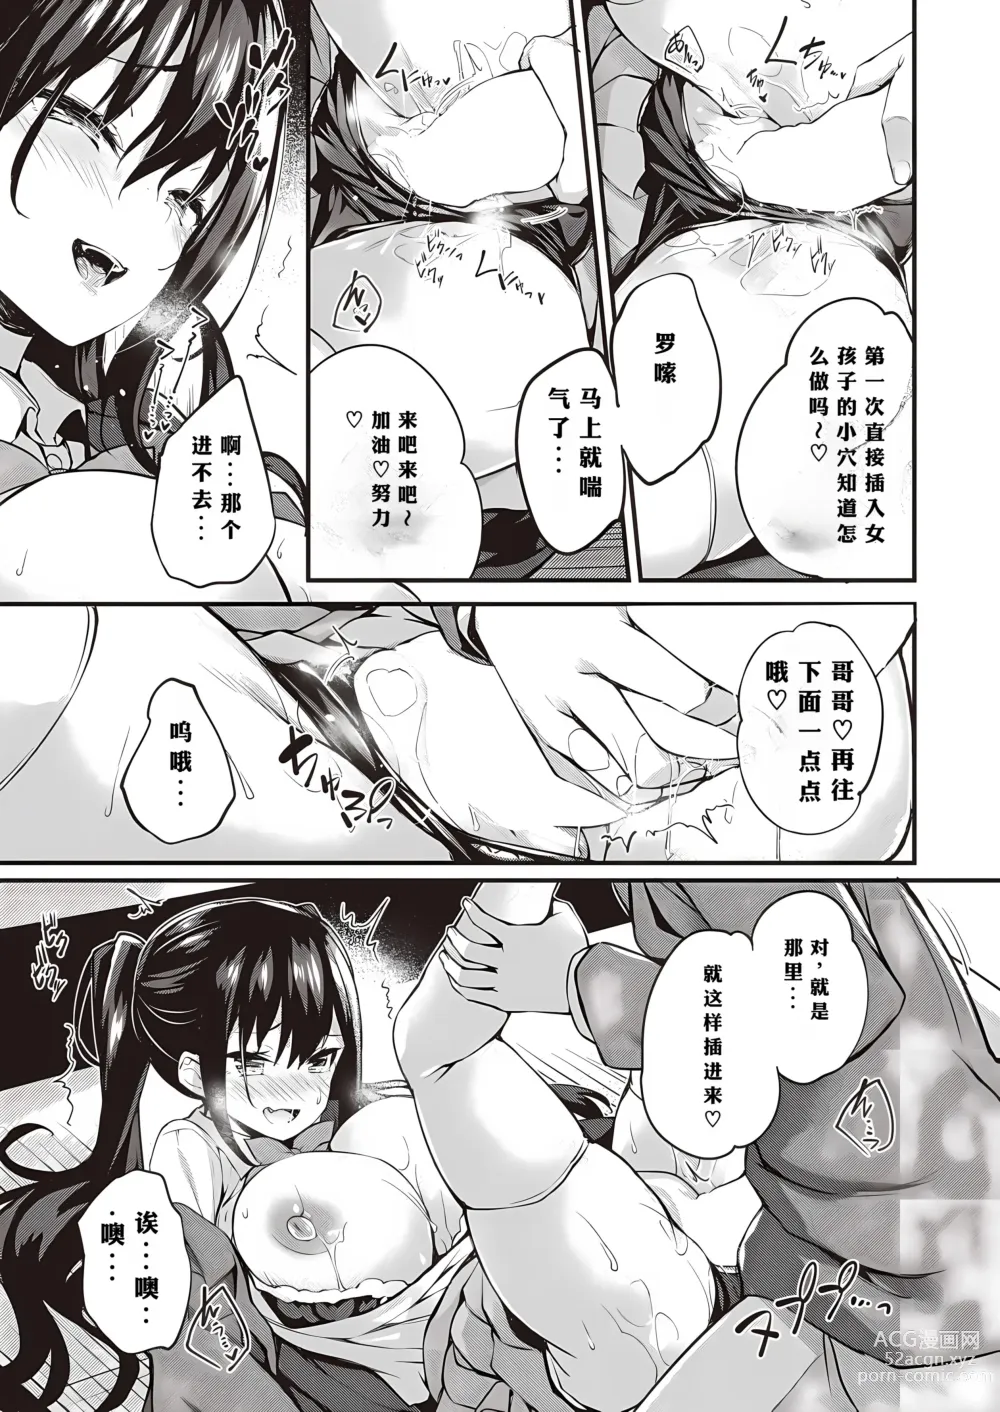 Page 9 of manga Oshiete Ageru + Motto Oshiete Ageru